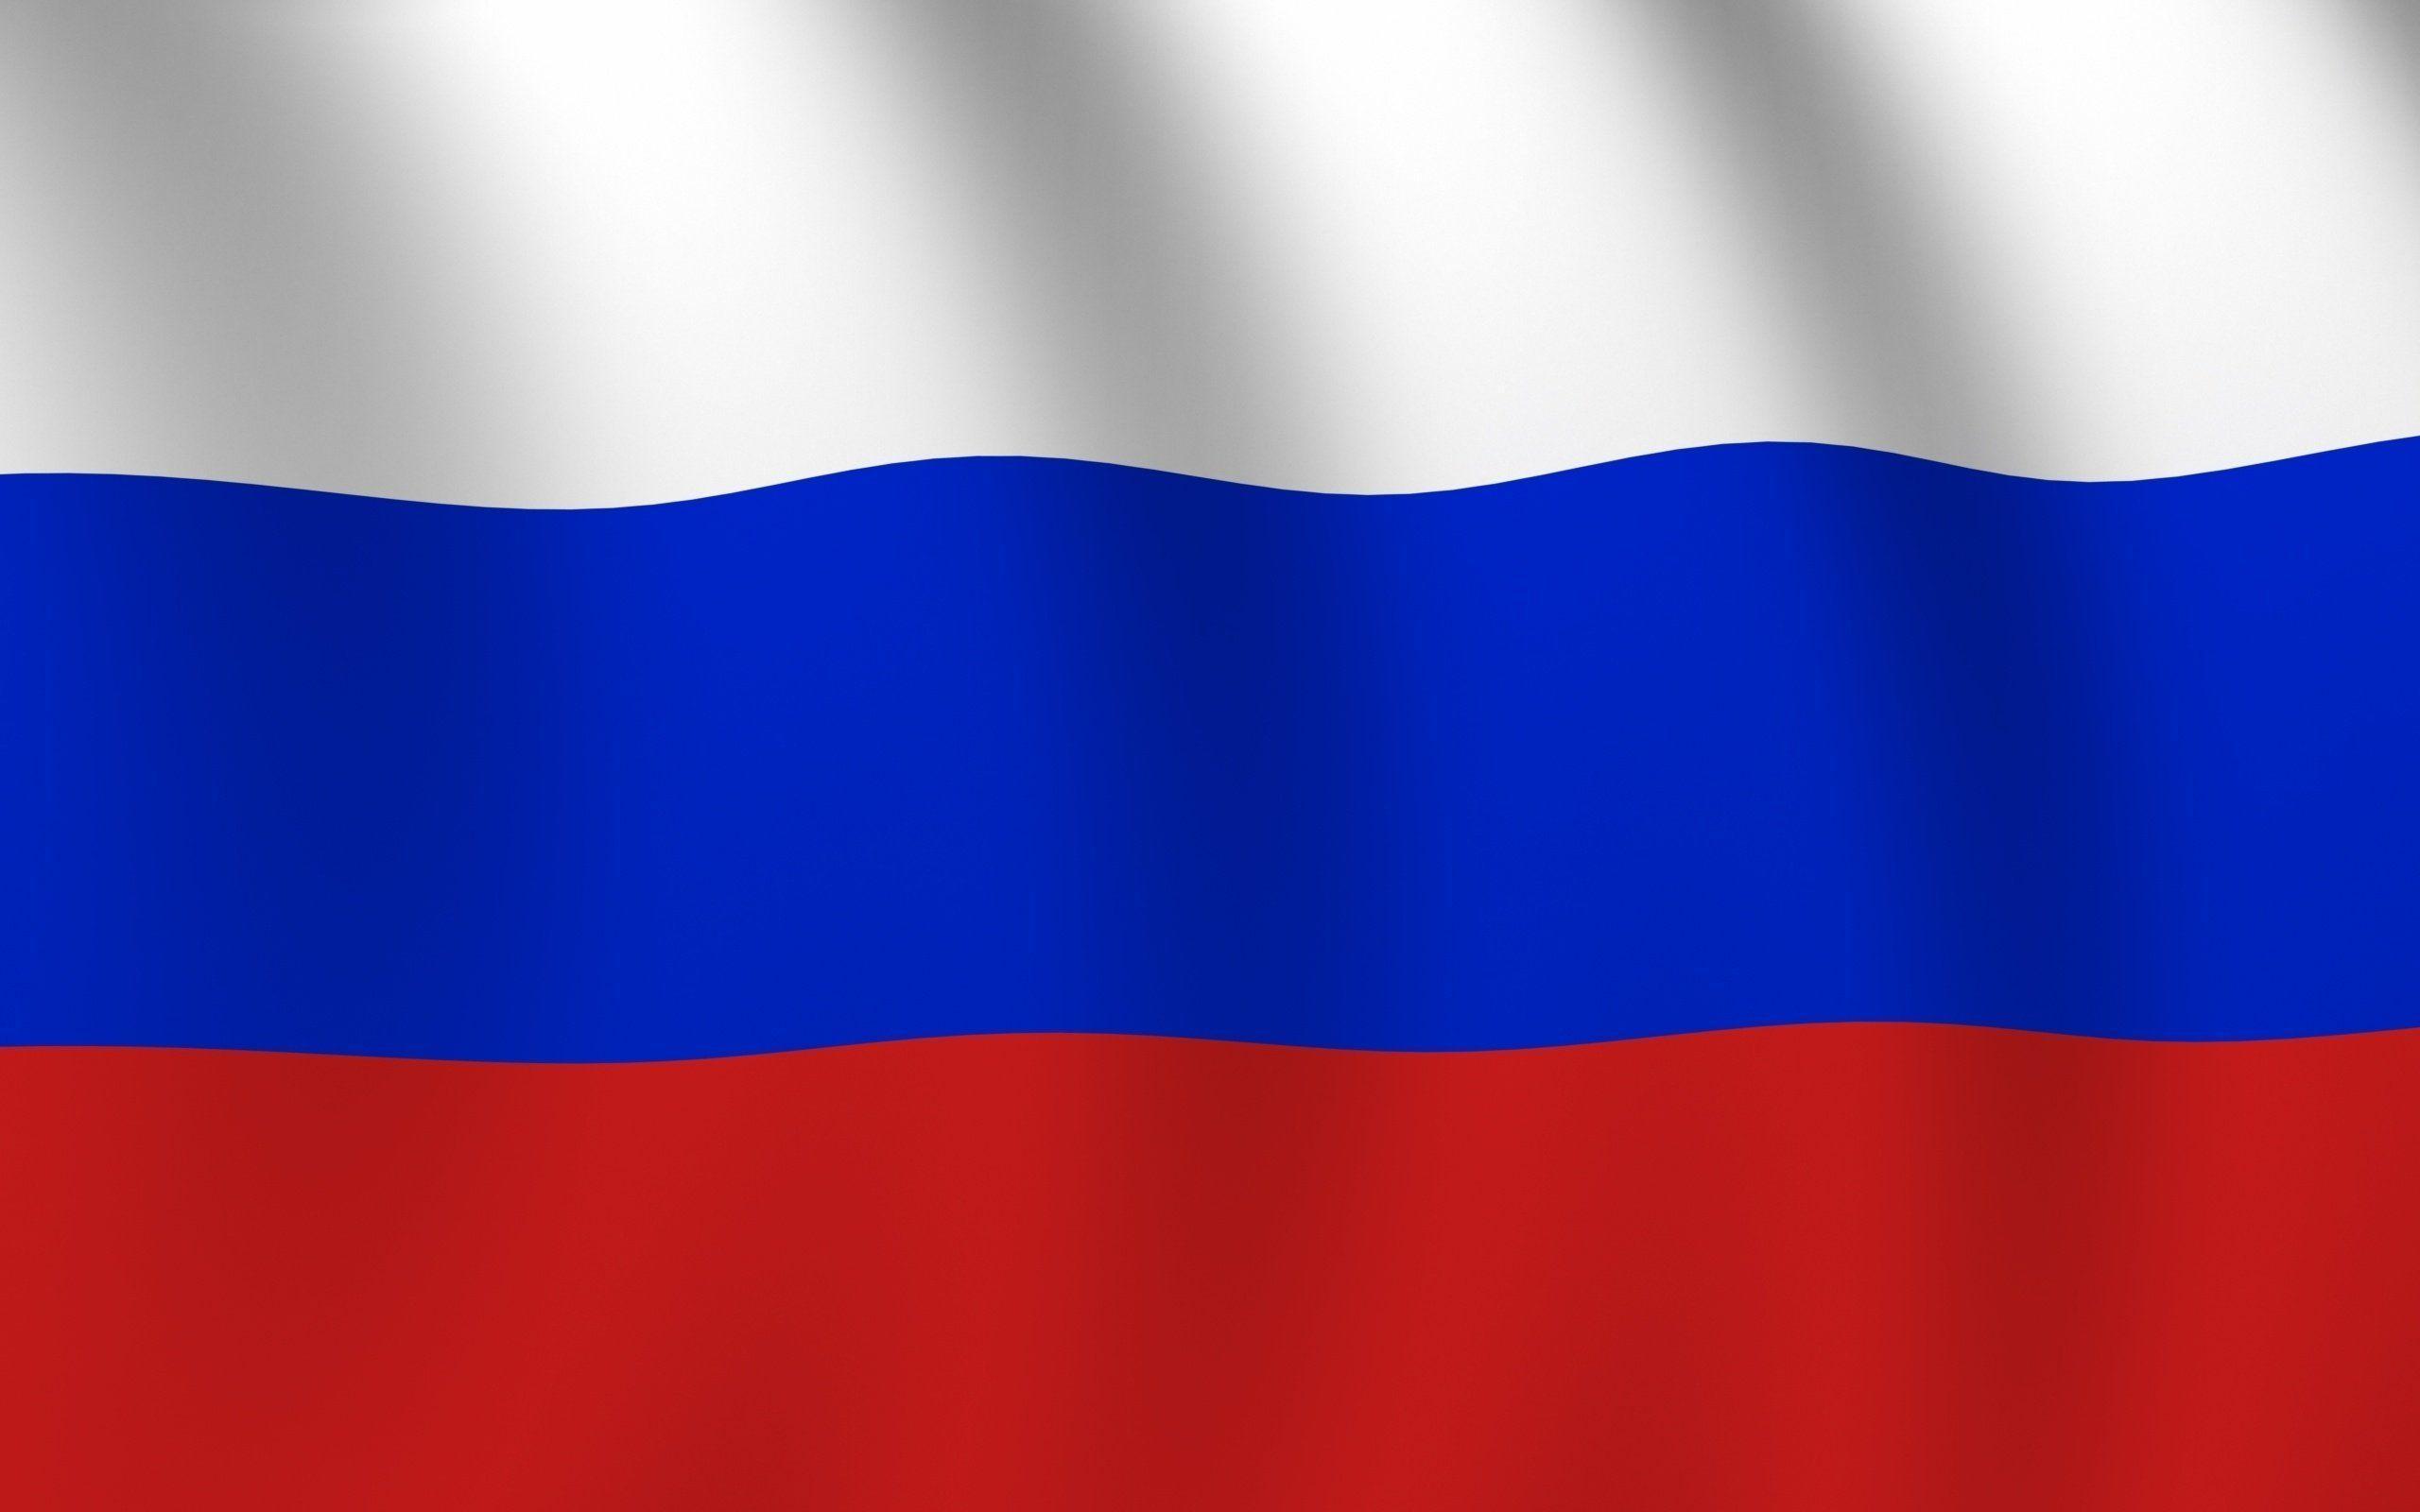 Обои 1 россия. Ф̆̈л̆̈ӑ̈г̆̈ р̆̈о̆̈с̆̈с̆̈й̈й̈. Флаг России. Флаг Триколор России. Флига России.